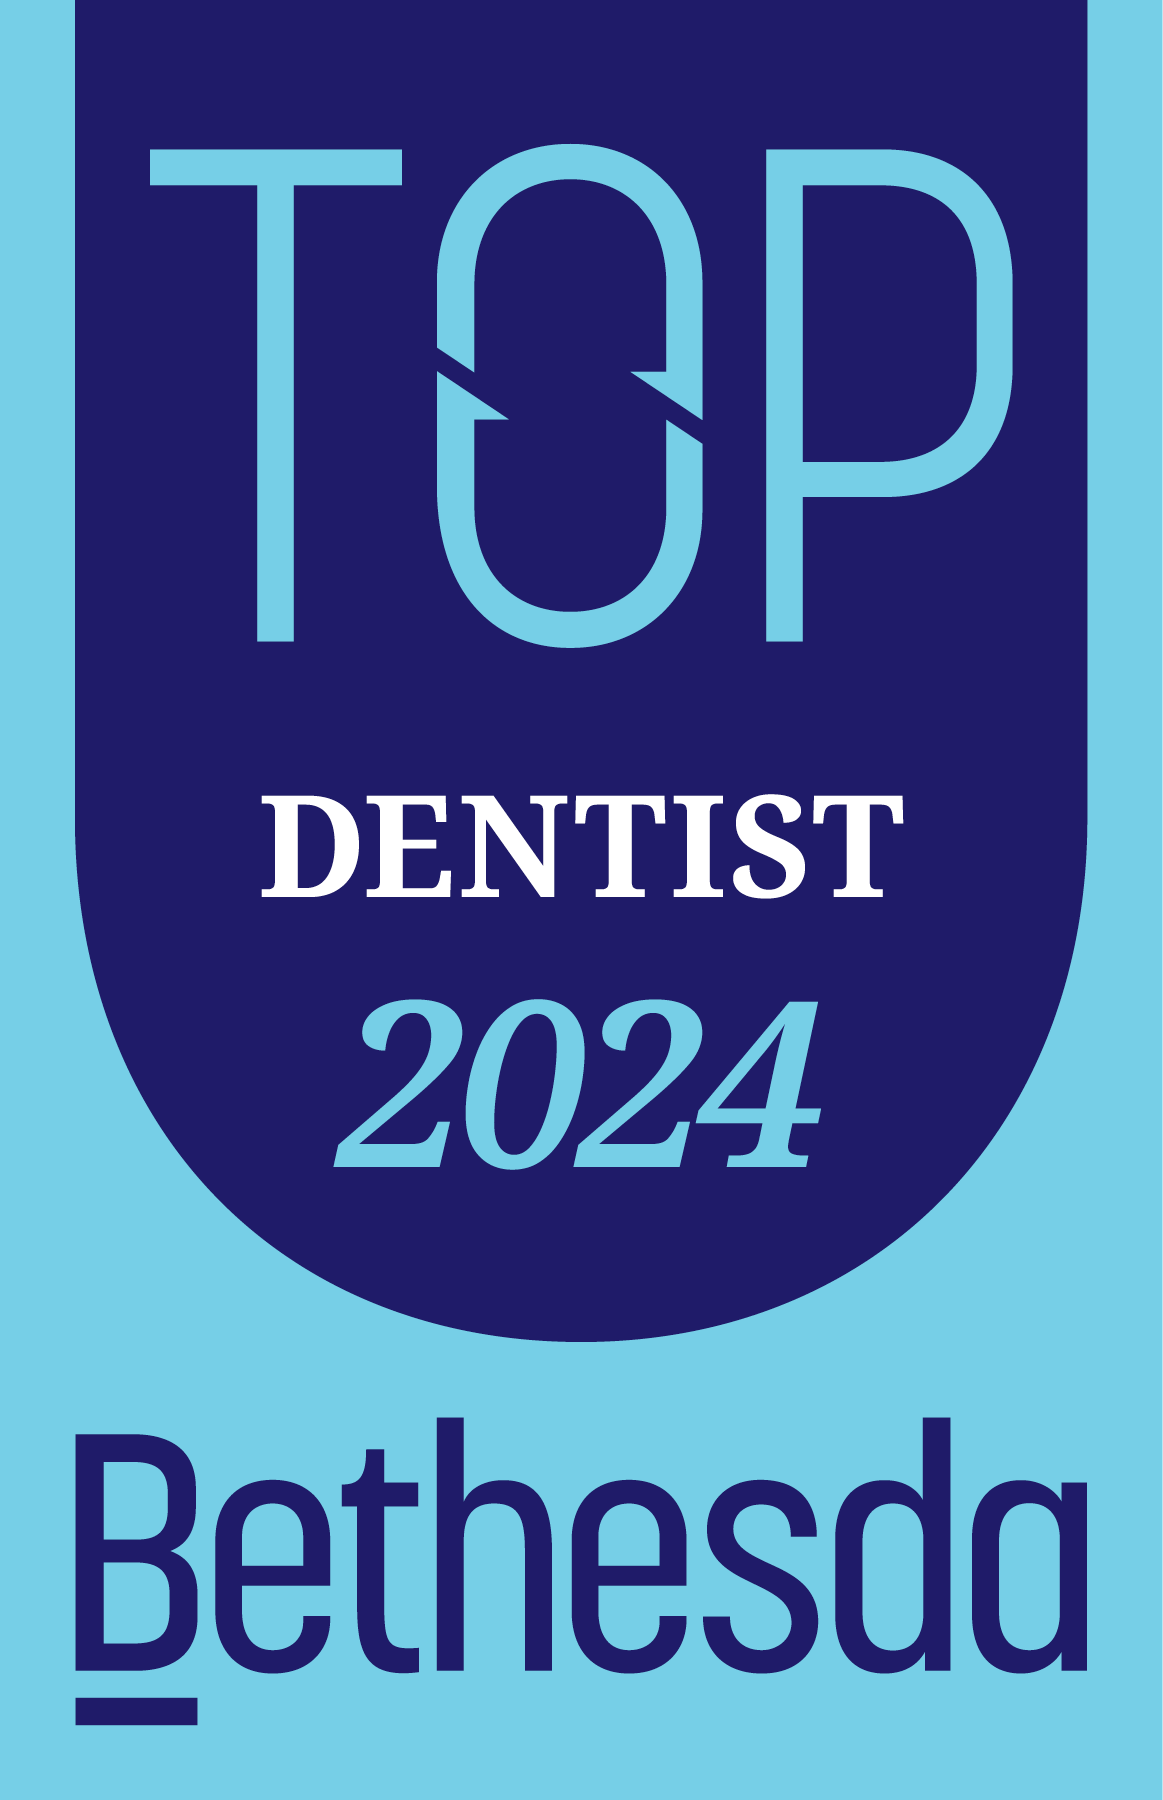 Bethesda Magazine Top Dentist 2022